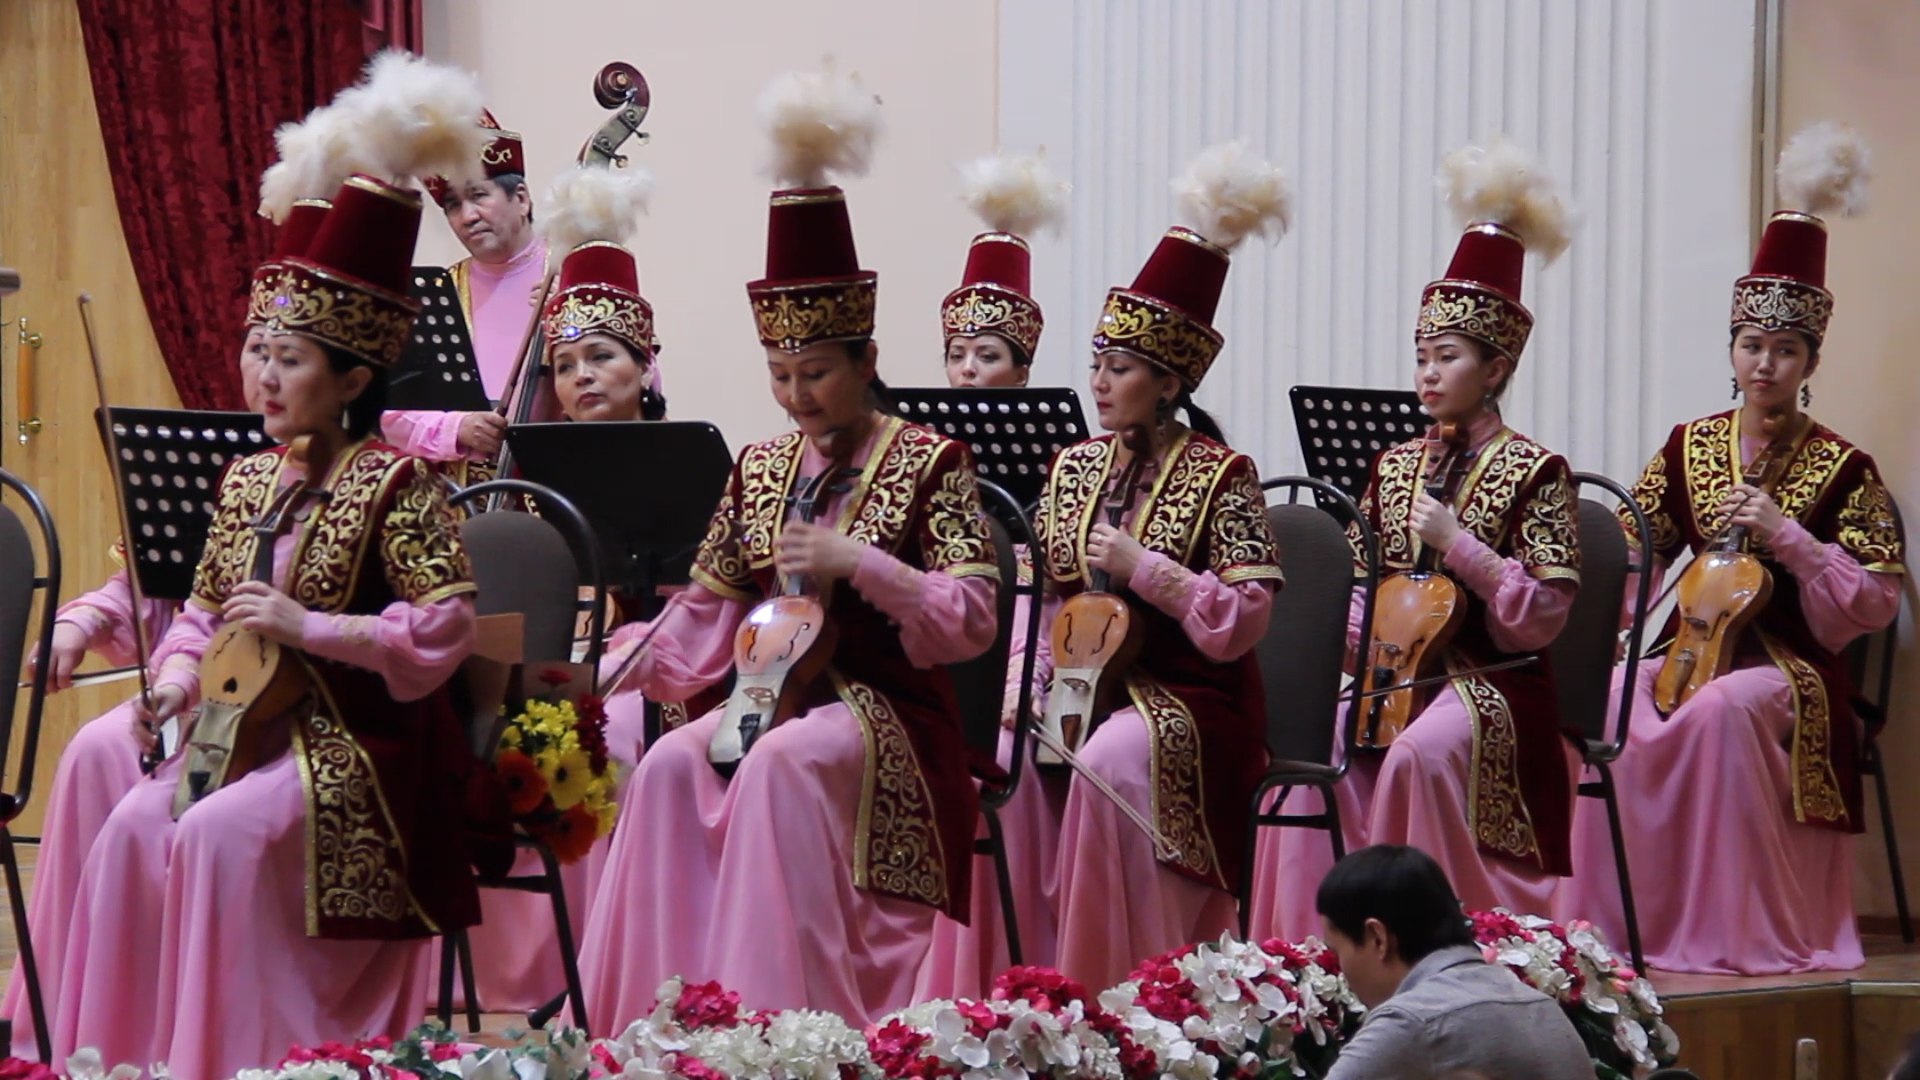 26 января 2017 г. прошел концерт Академического оркестра Казахских народных инструментов им. Таттимбета